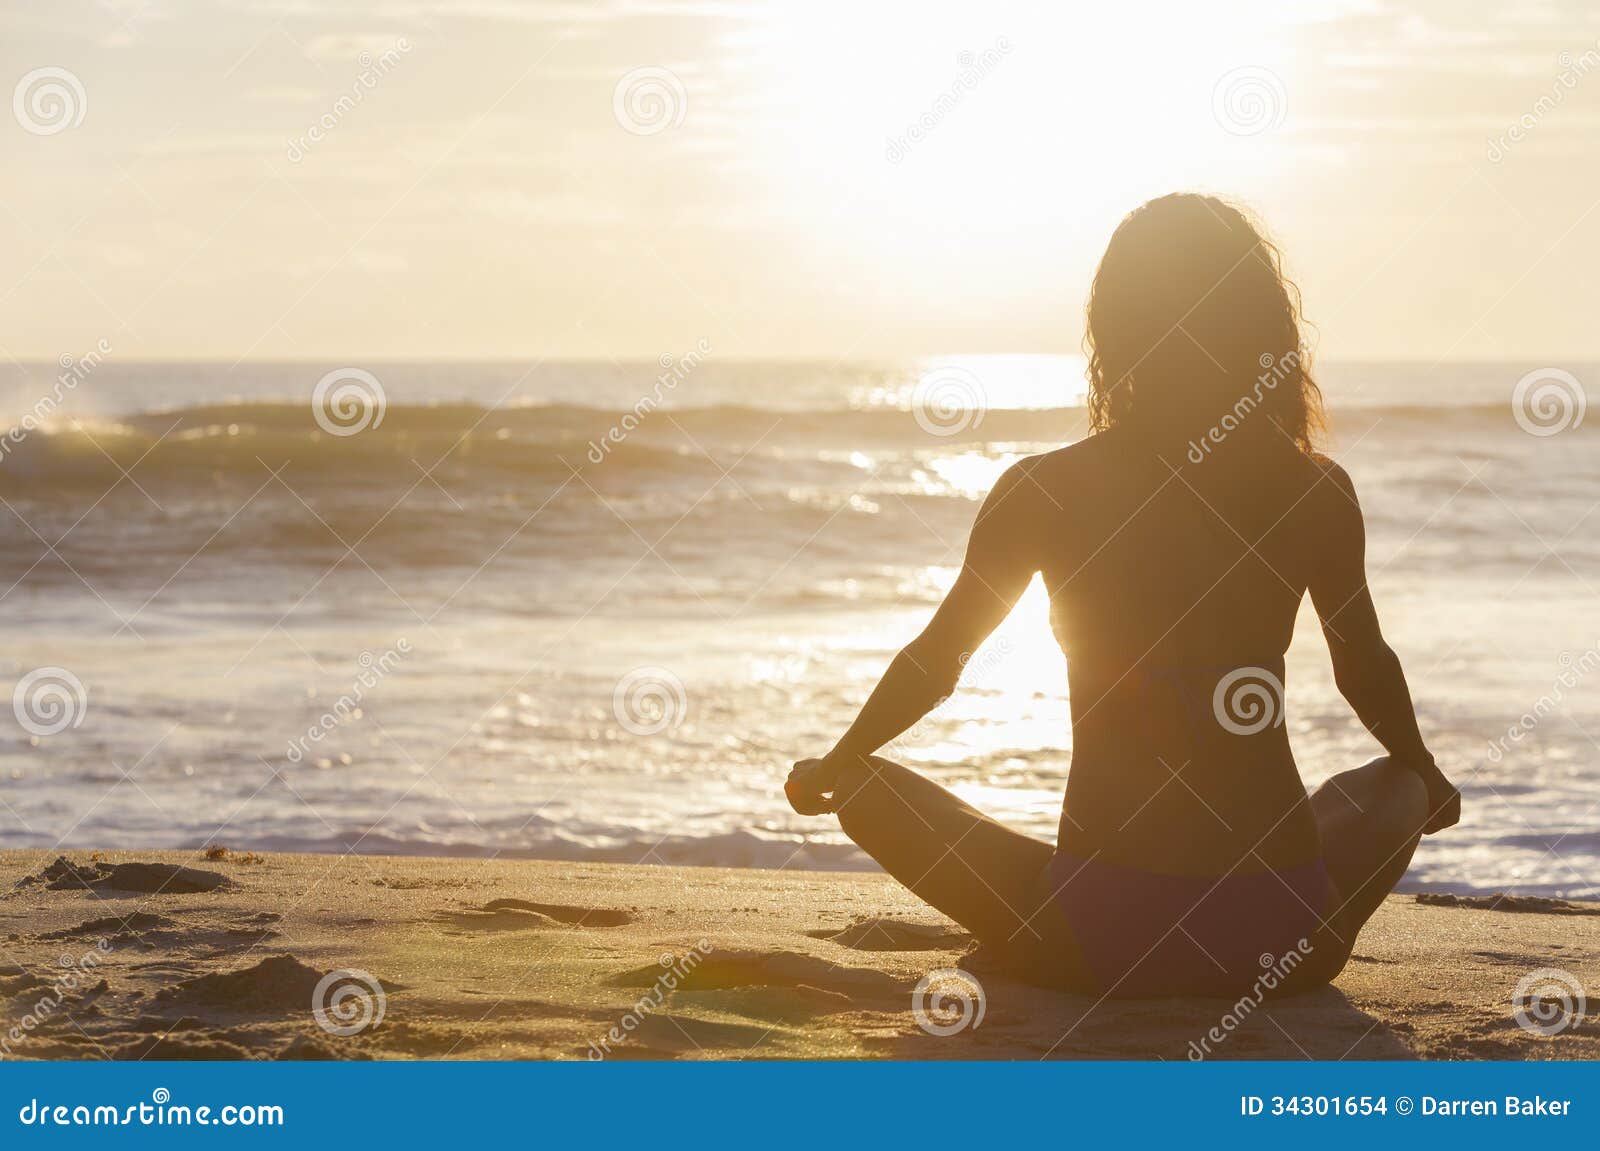 woman girl sitting sunrise sunset bikini beach